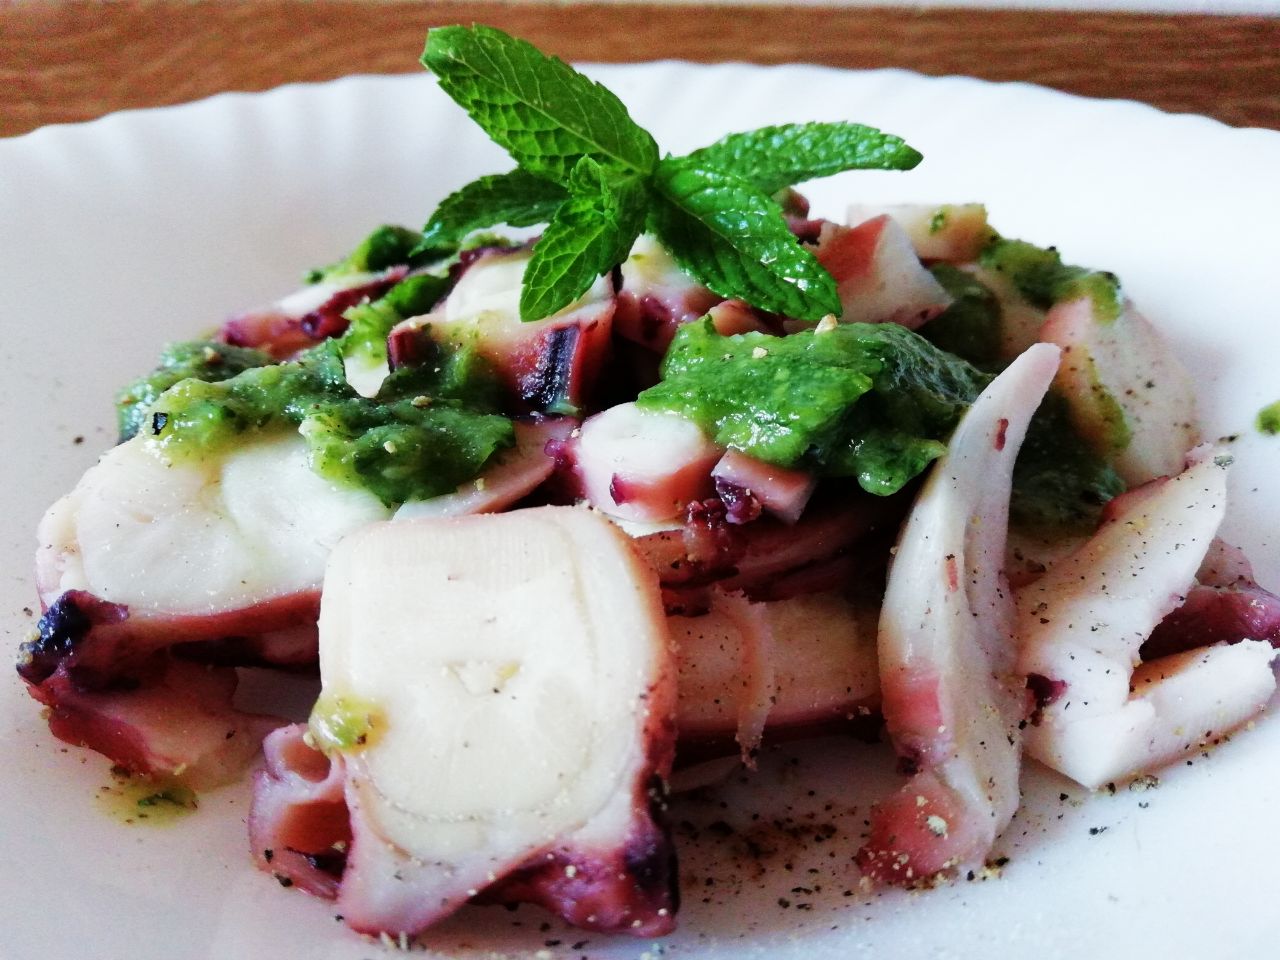 Secondi piatti a base di pesce: totano con salsa di zucchine e menta!